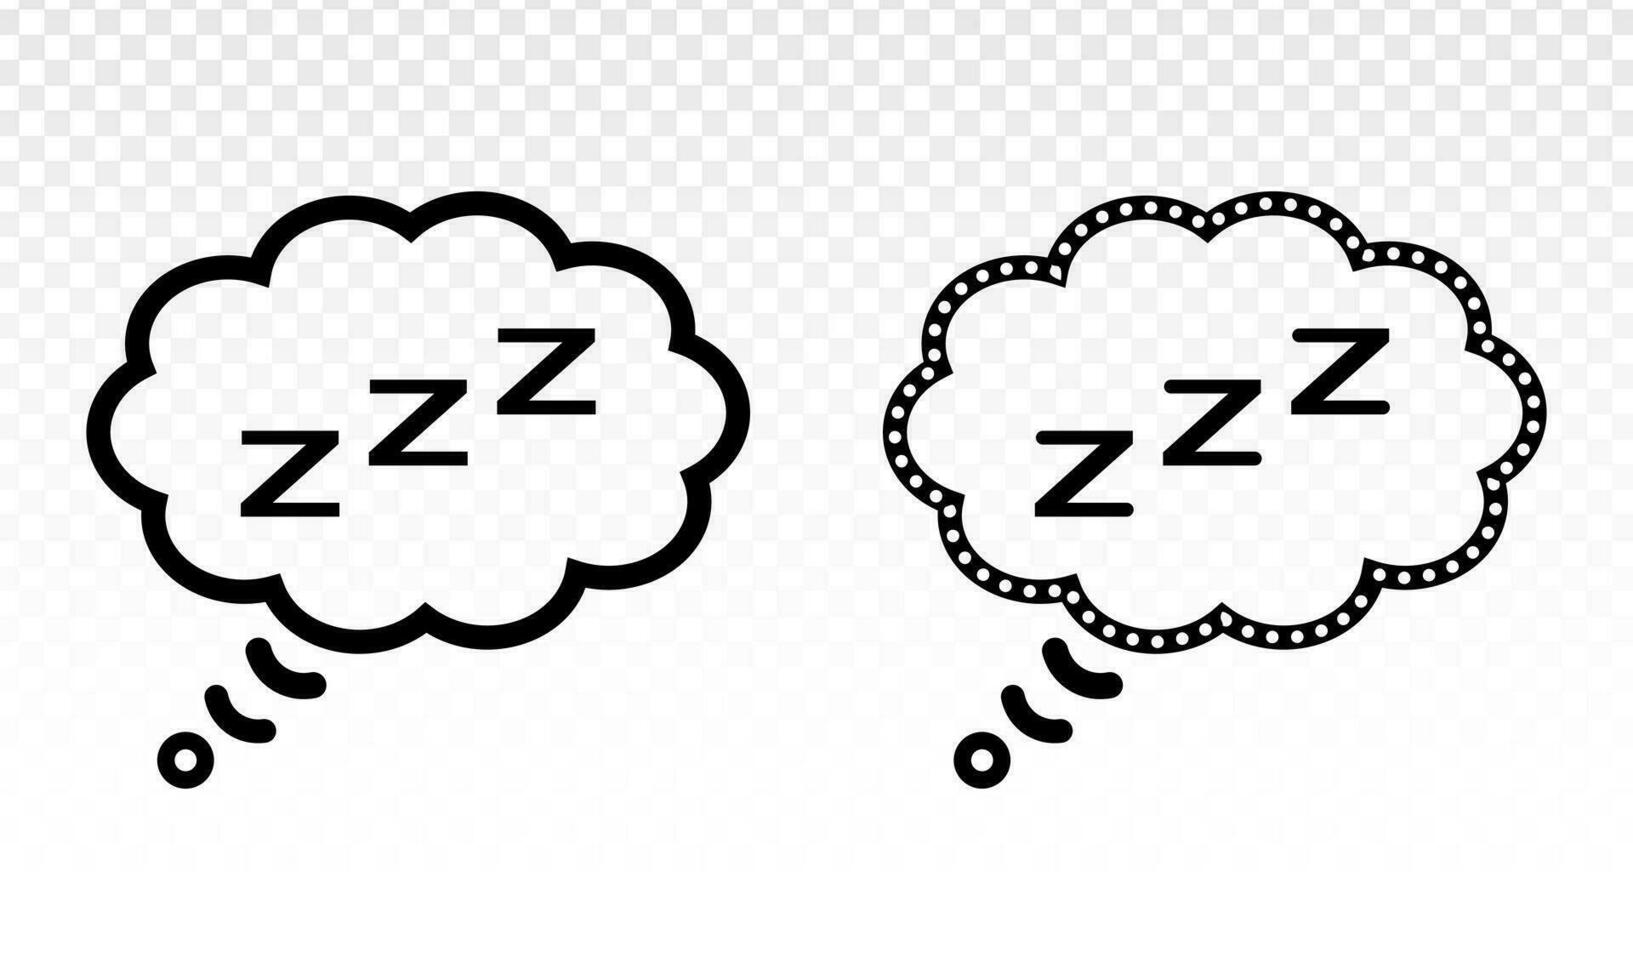 Schlafen - - zzz oder schlummern im habe gedacht Blase Symbol zum Schlaf Apps und Websites . vektor